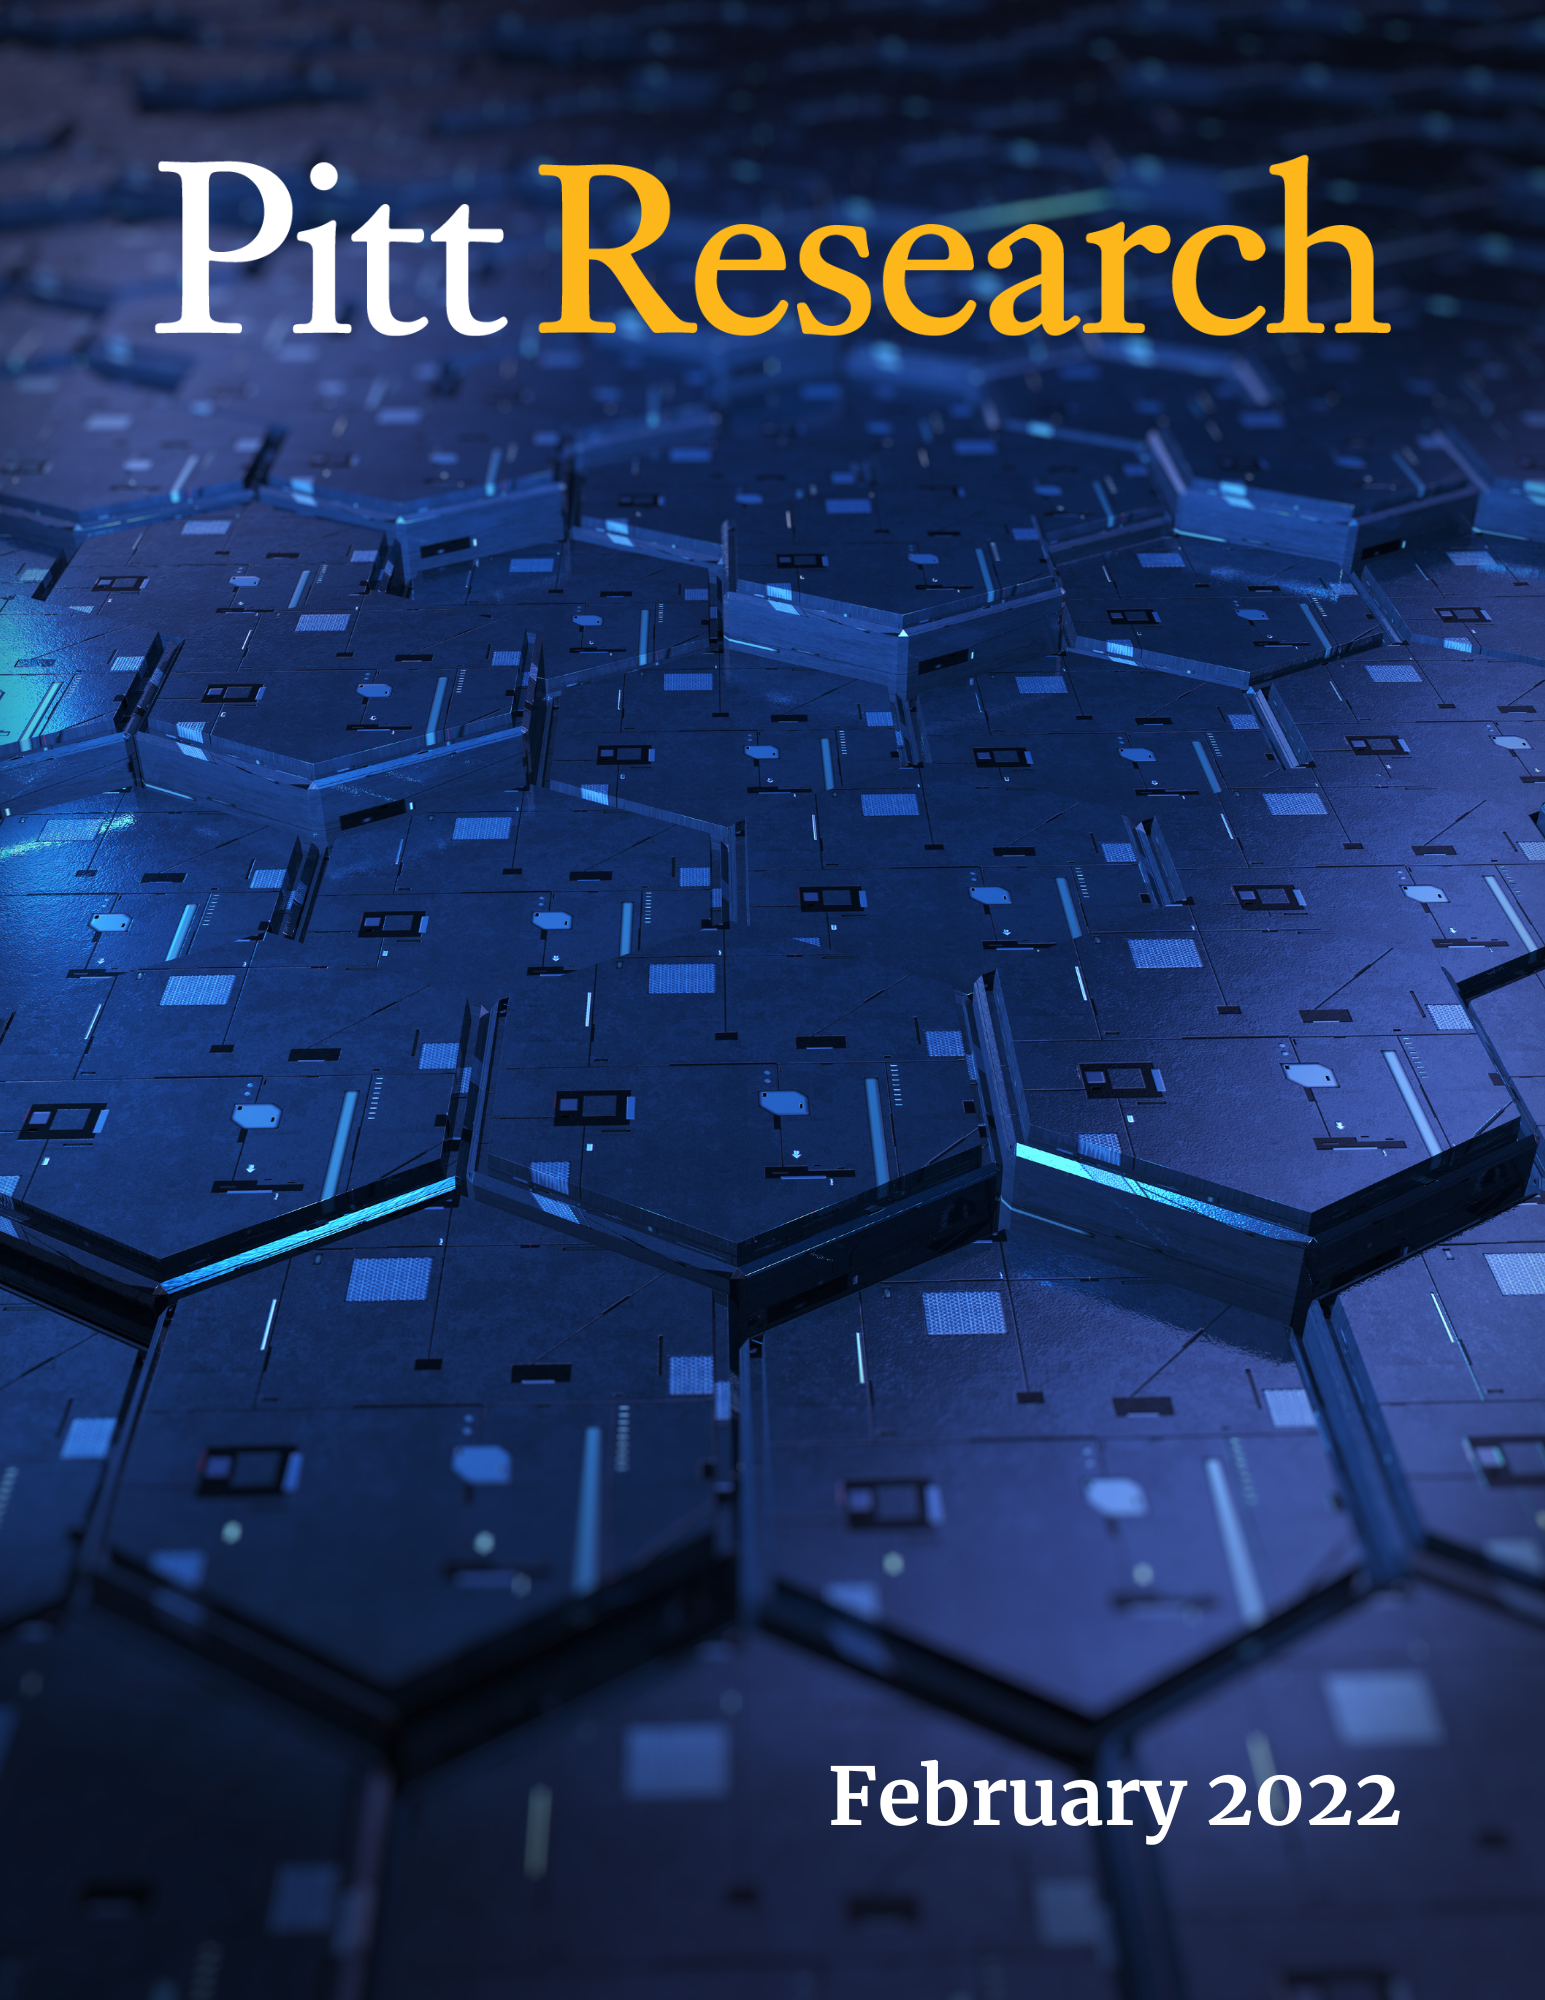 Pitt Research Newsletter for February 2022